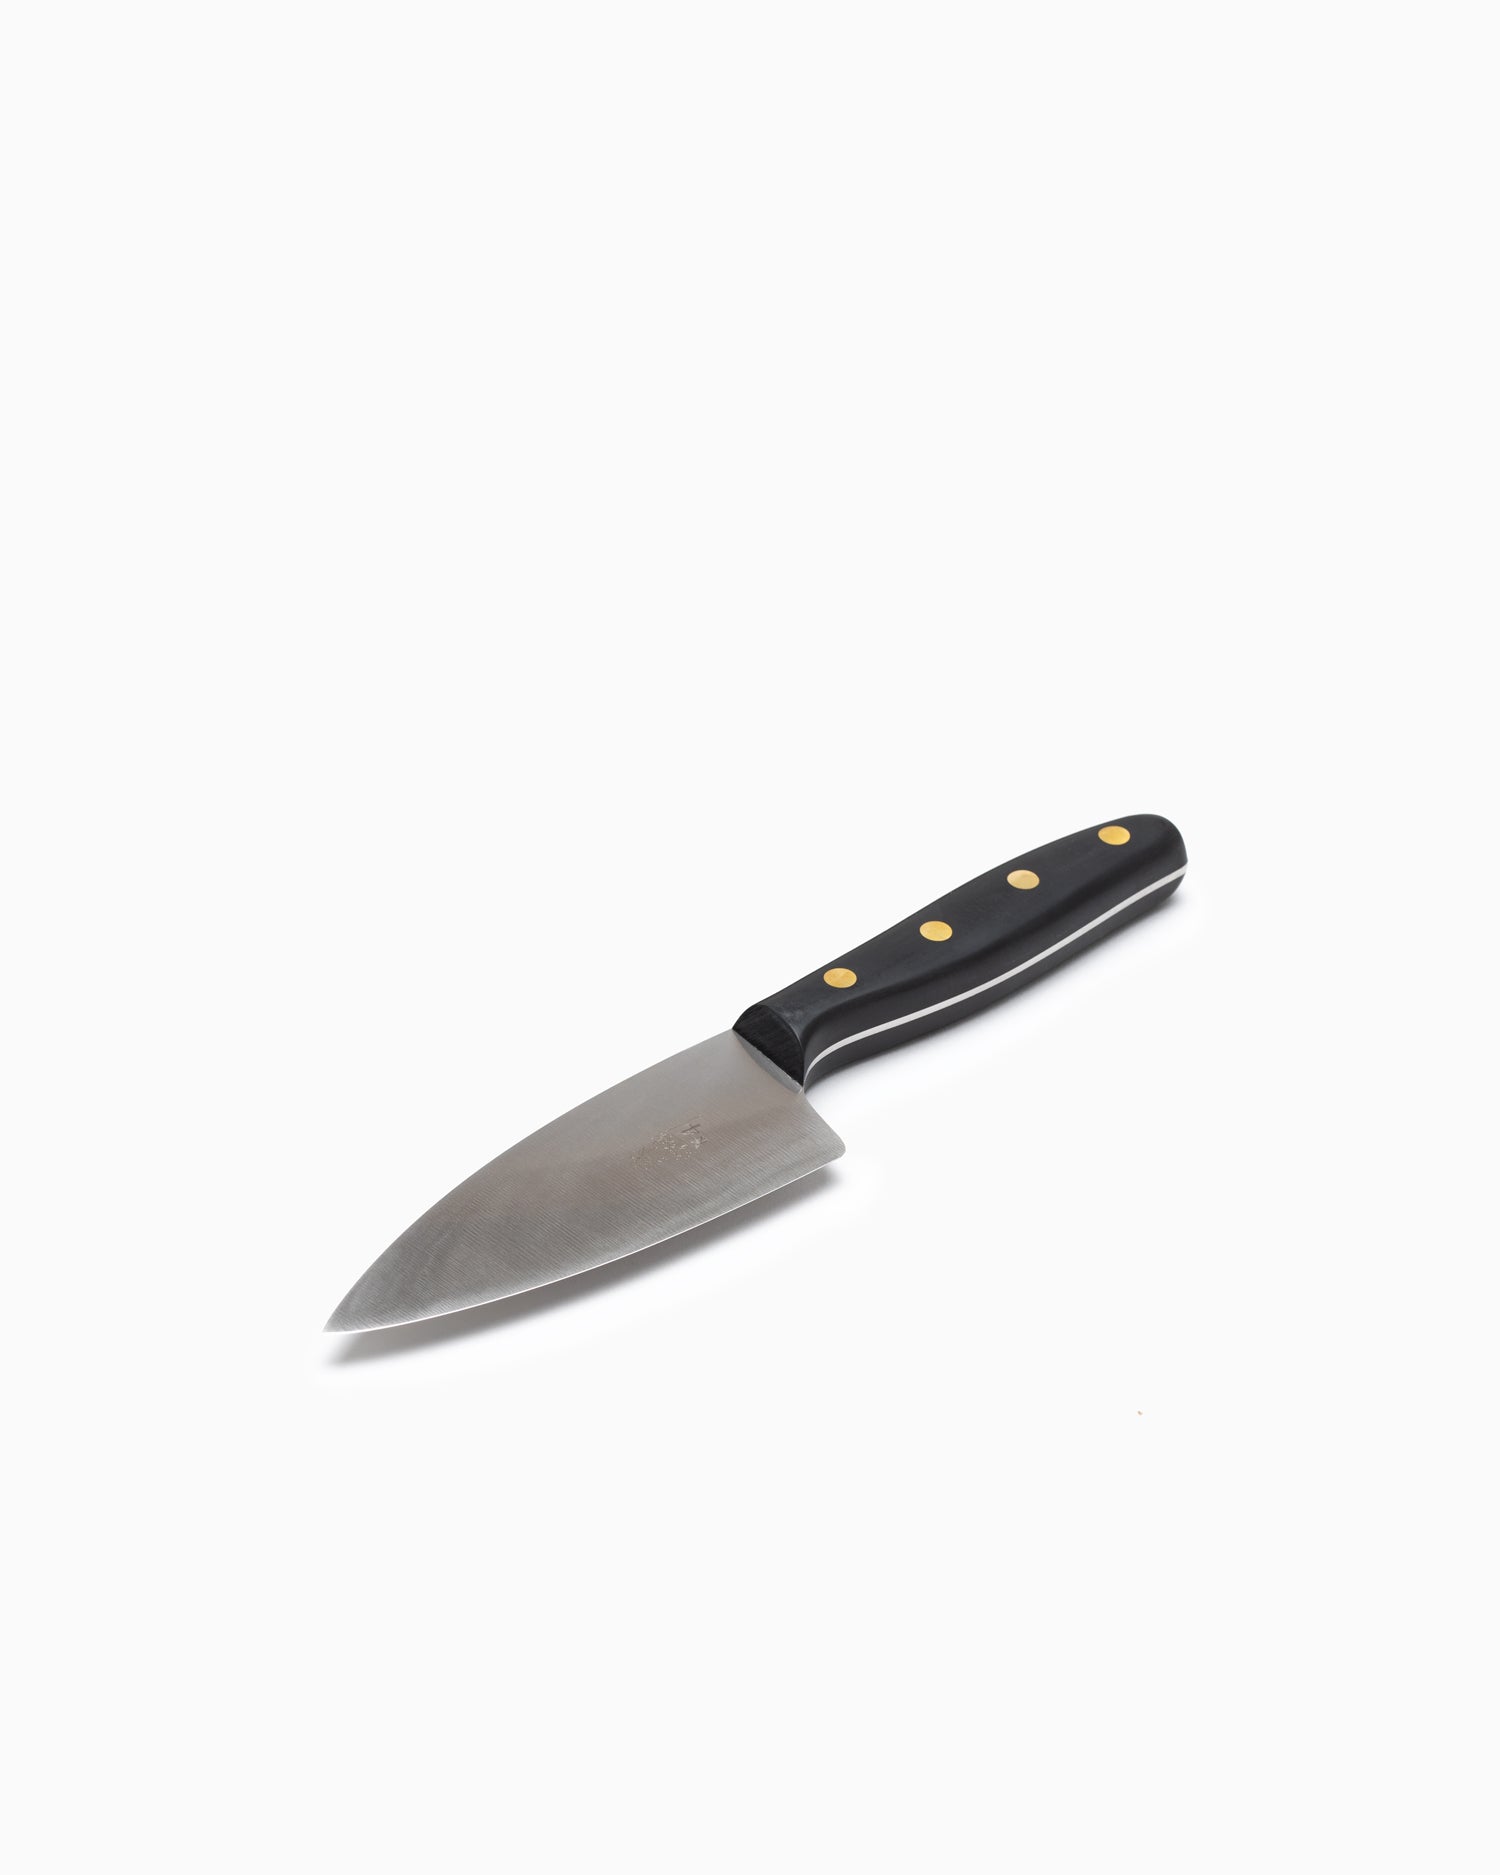 Robert Herder K4 Kitchen Knife - Stainless